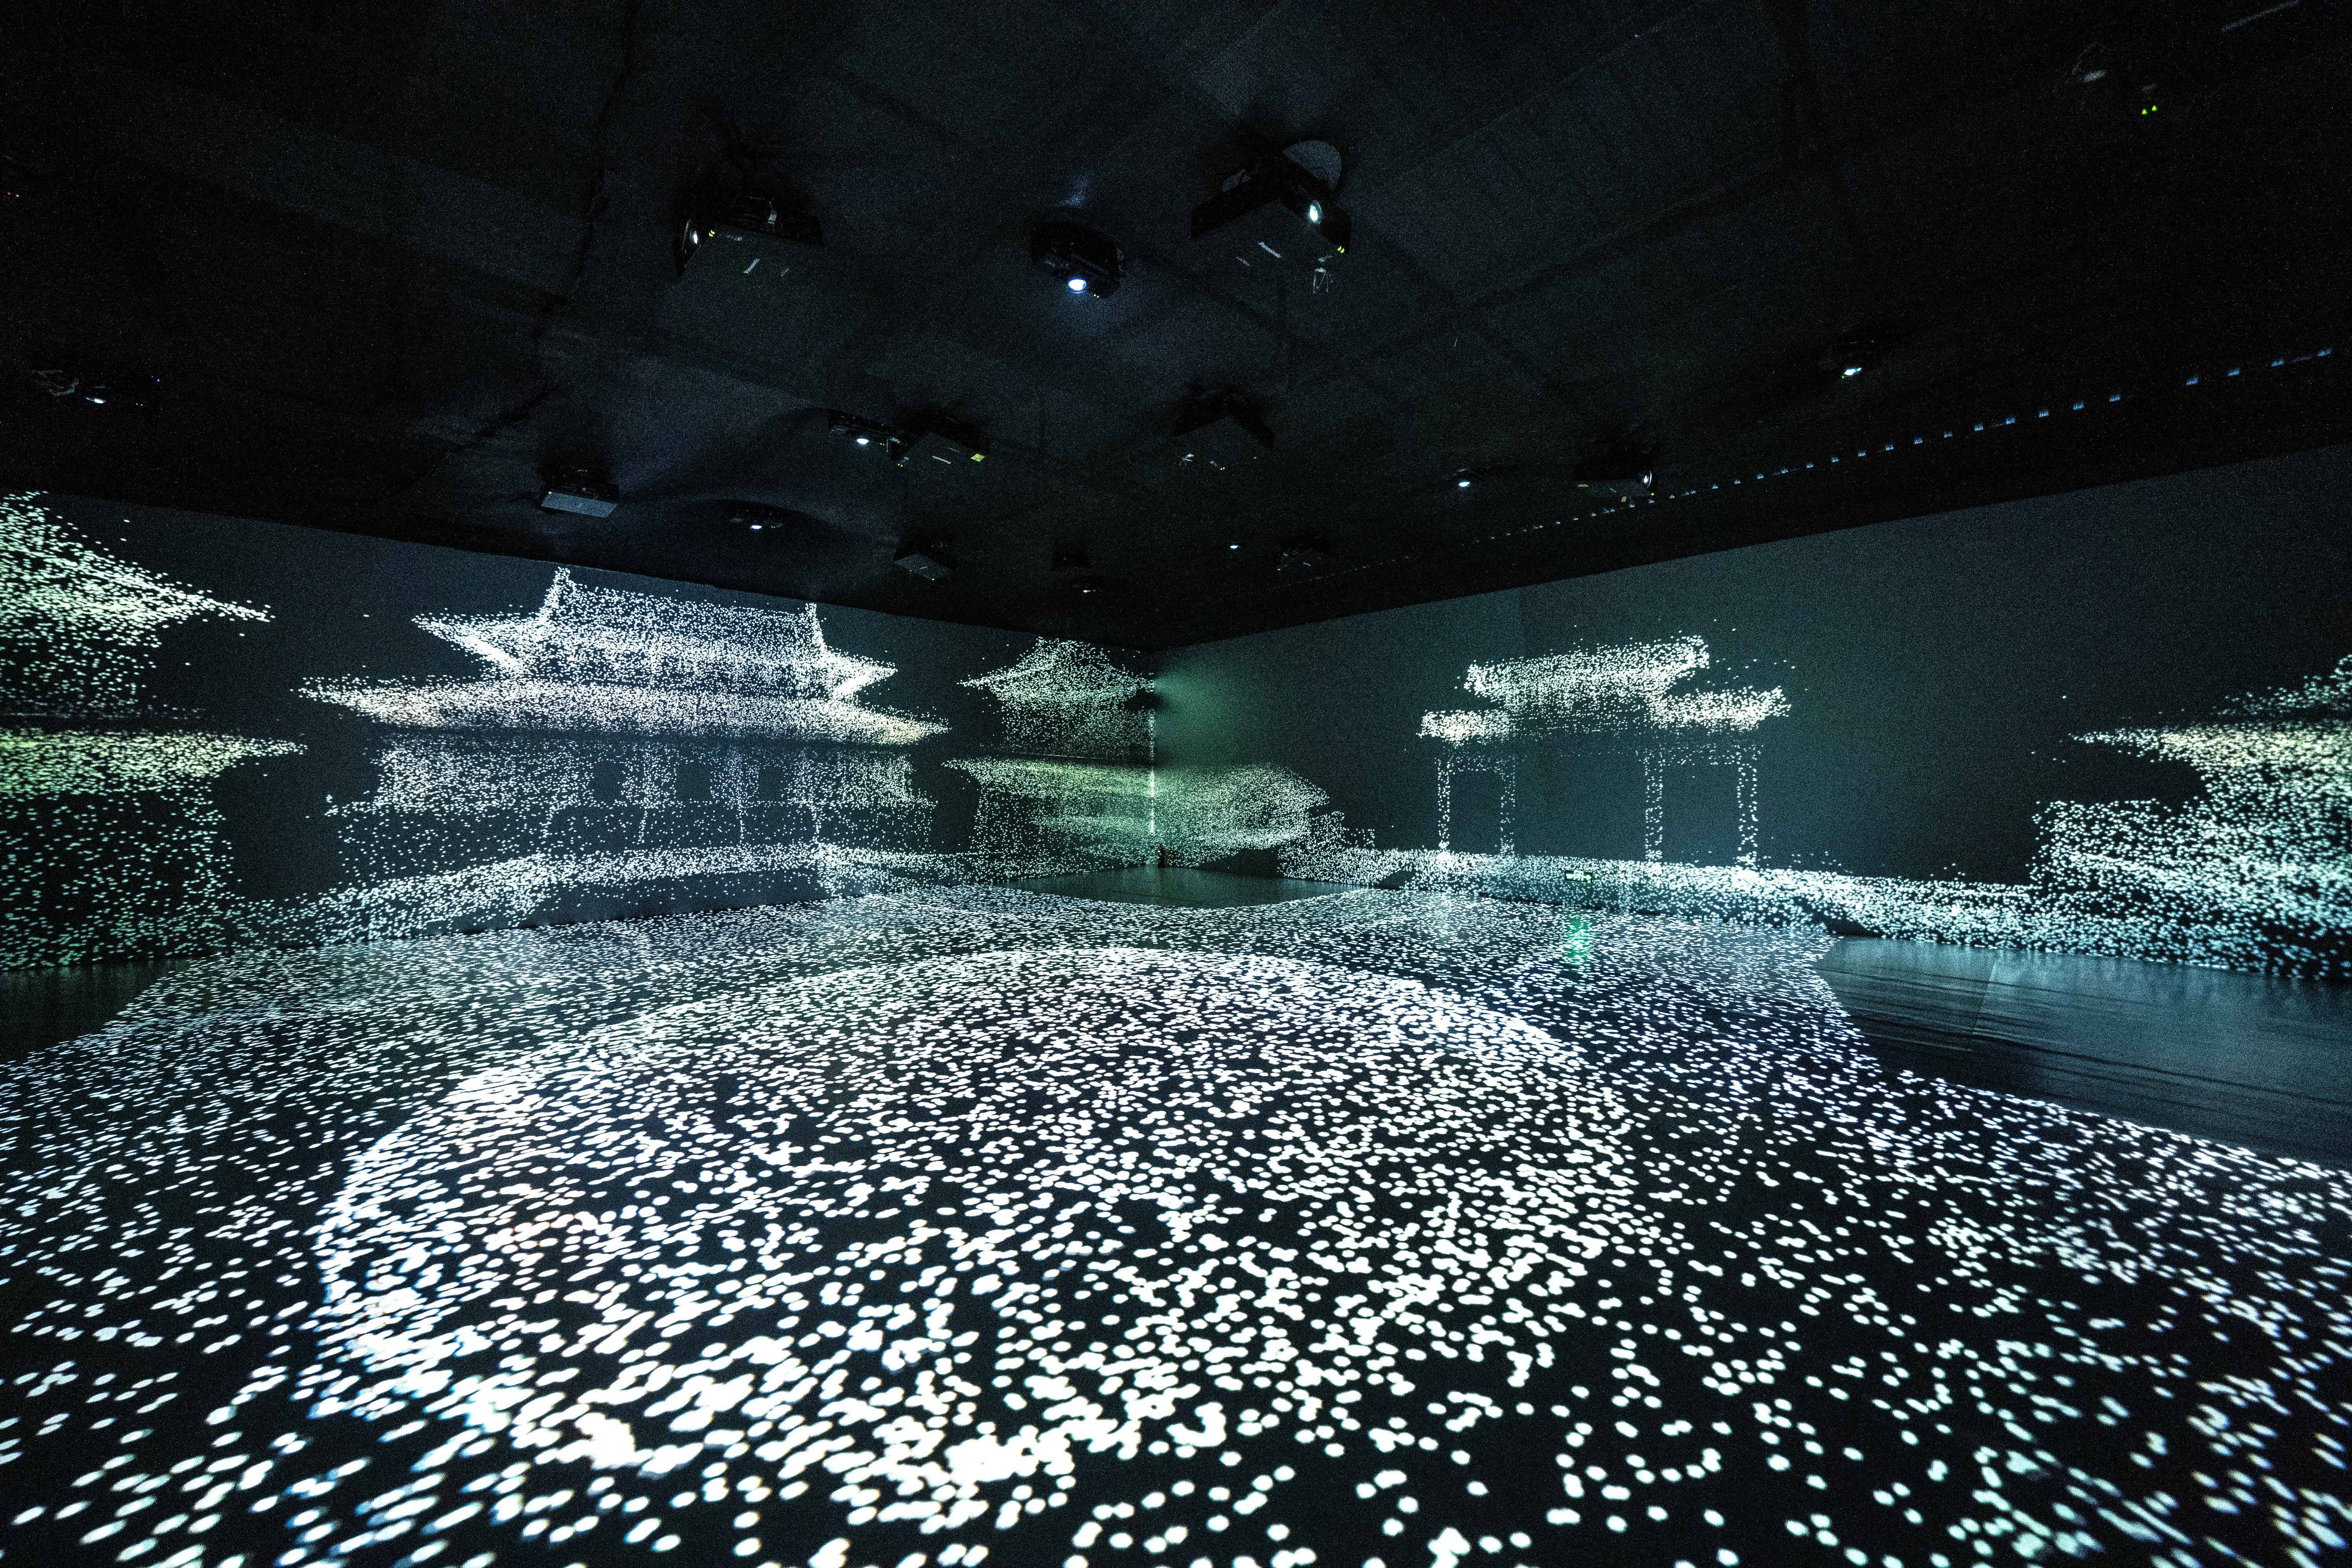 《时光·宝藏——对话达芬奇》沉浸式光影艺术展深圳展出